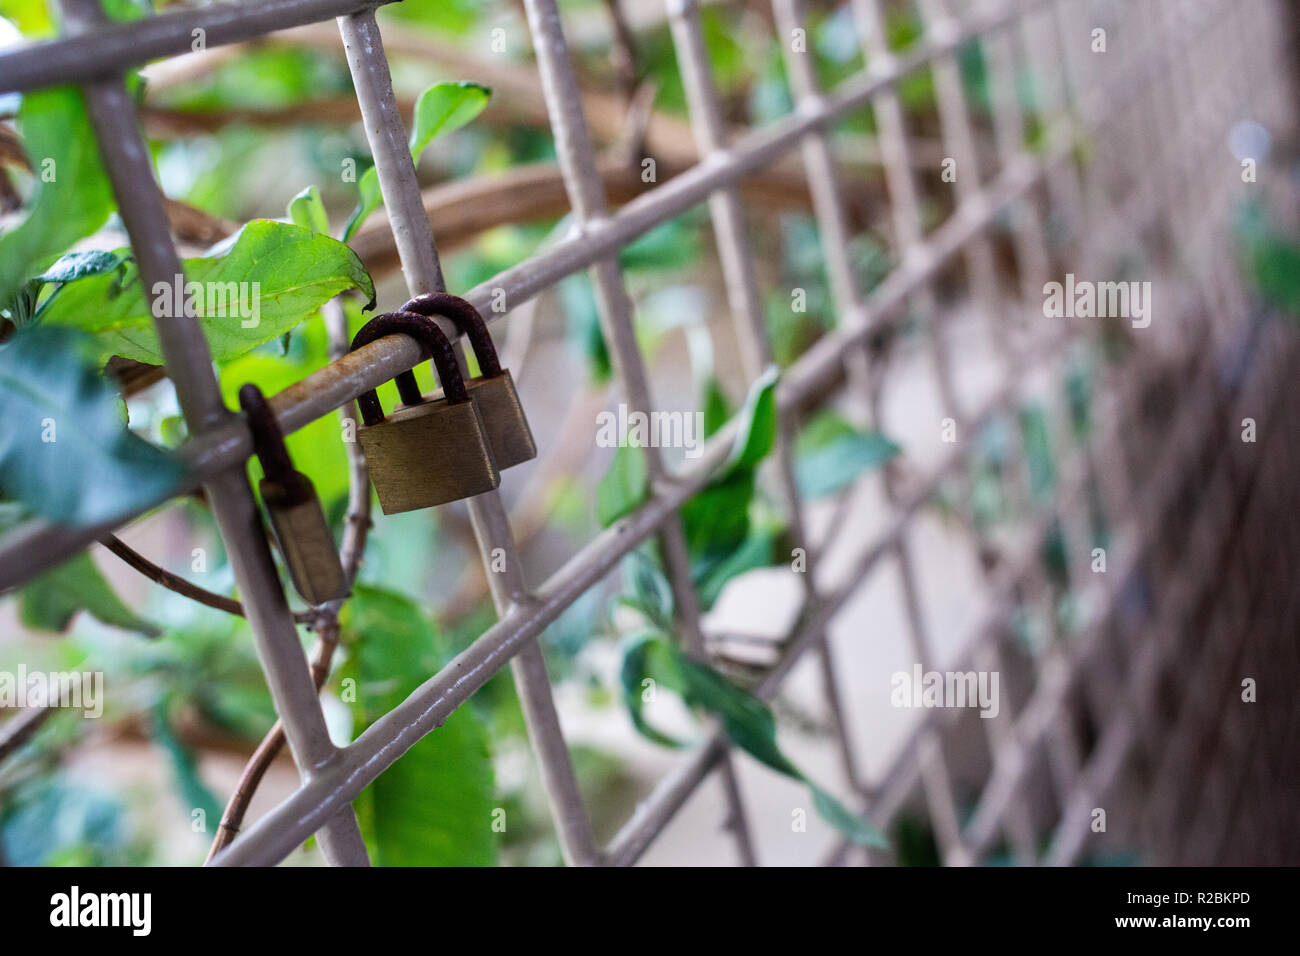 Candados en jaula con hojas verdes y fondo desenfocadas. Foto de stock